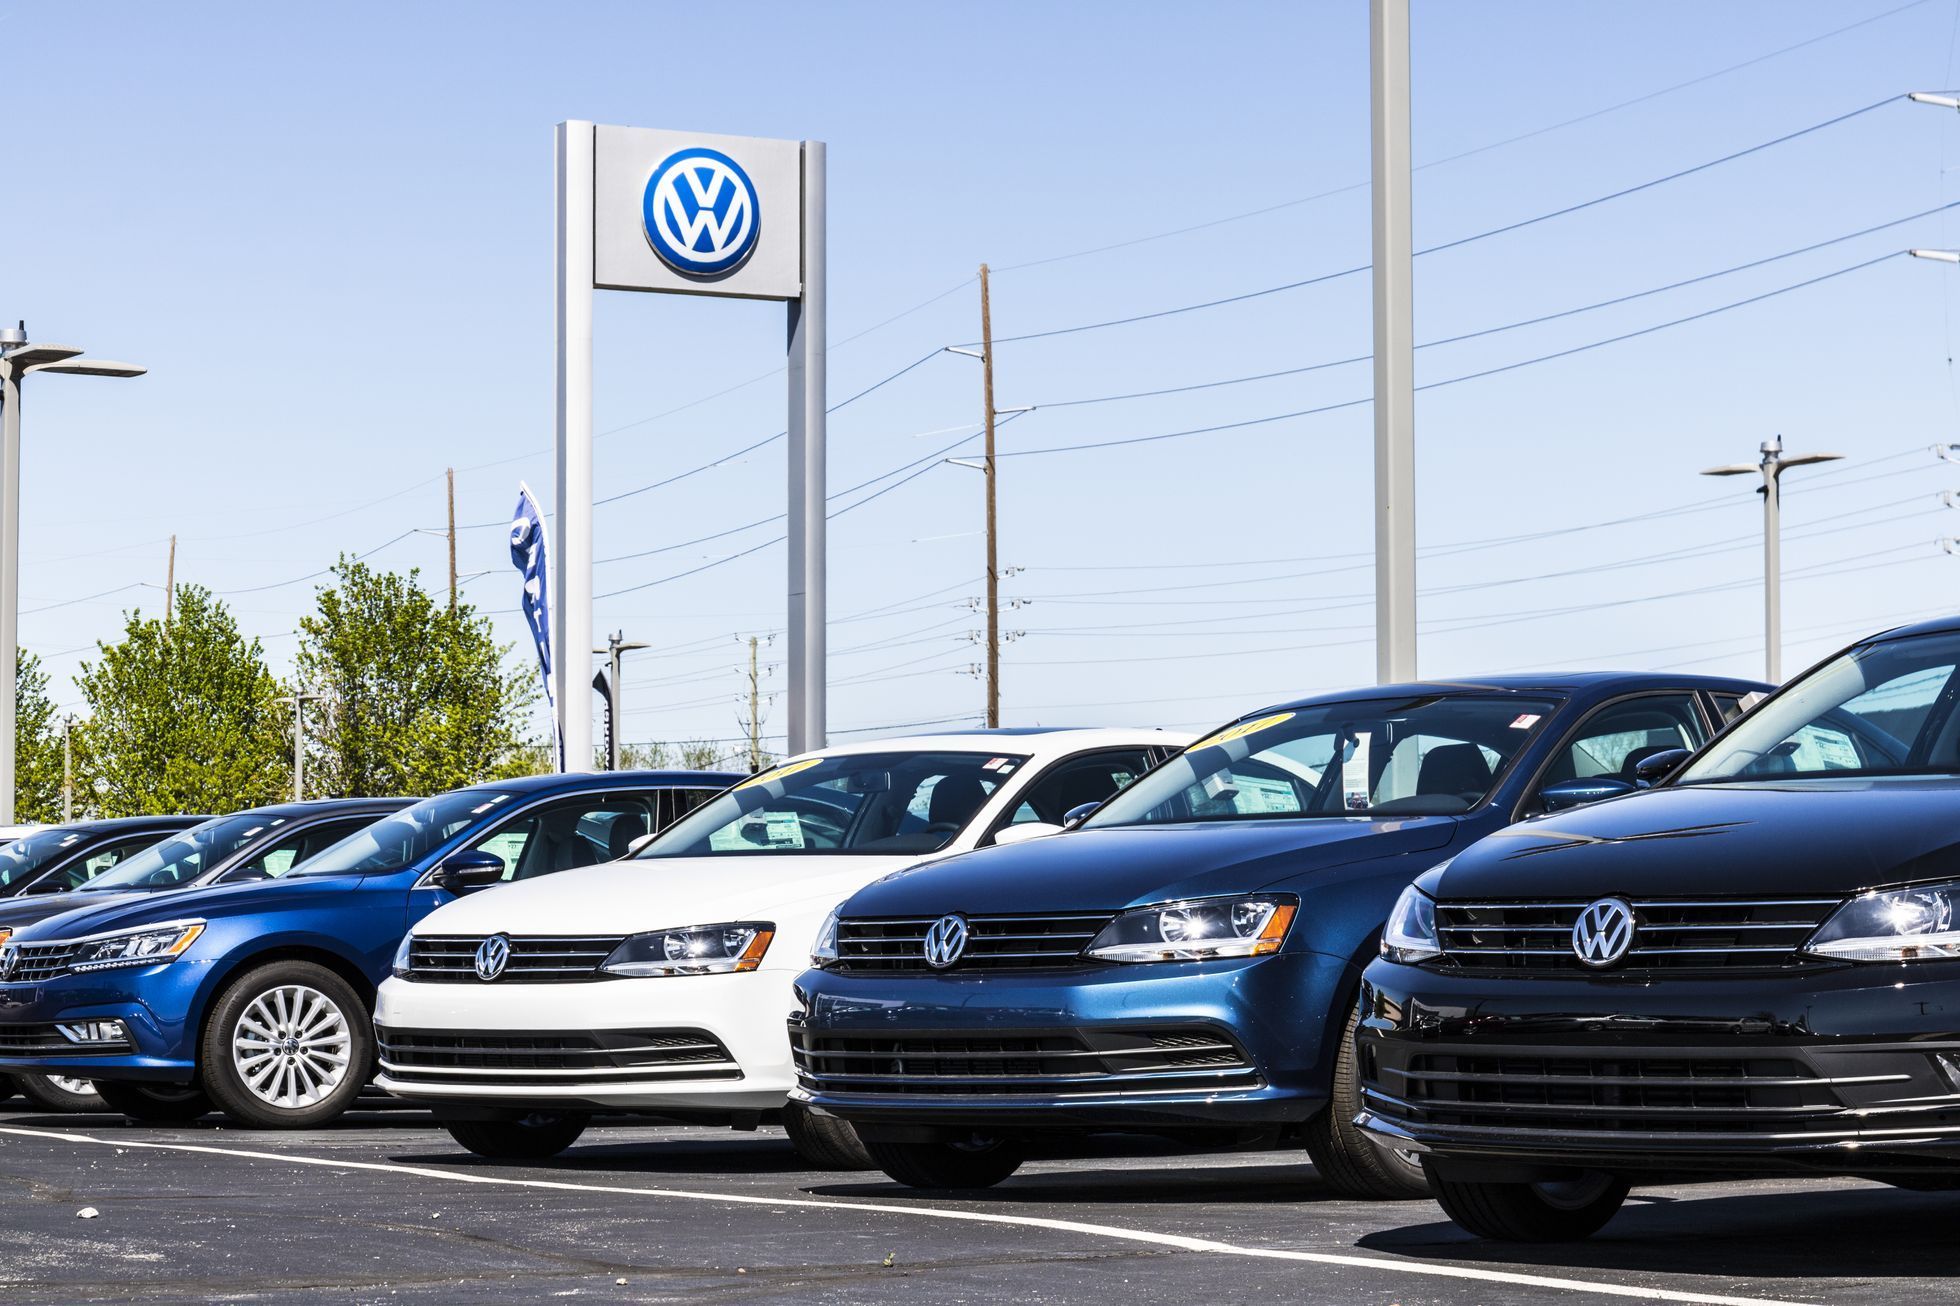 Volkswagen dealer USA